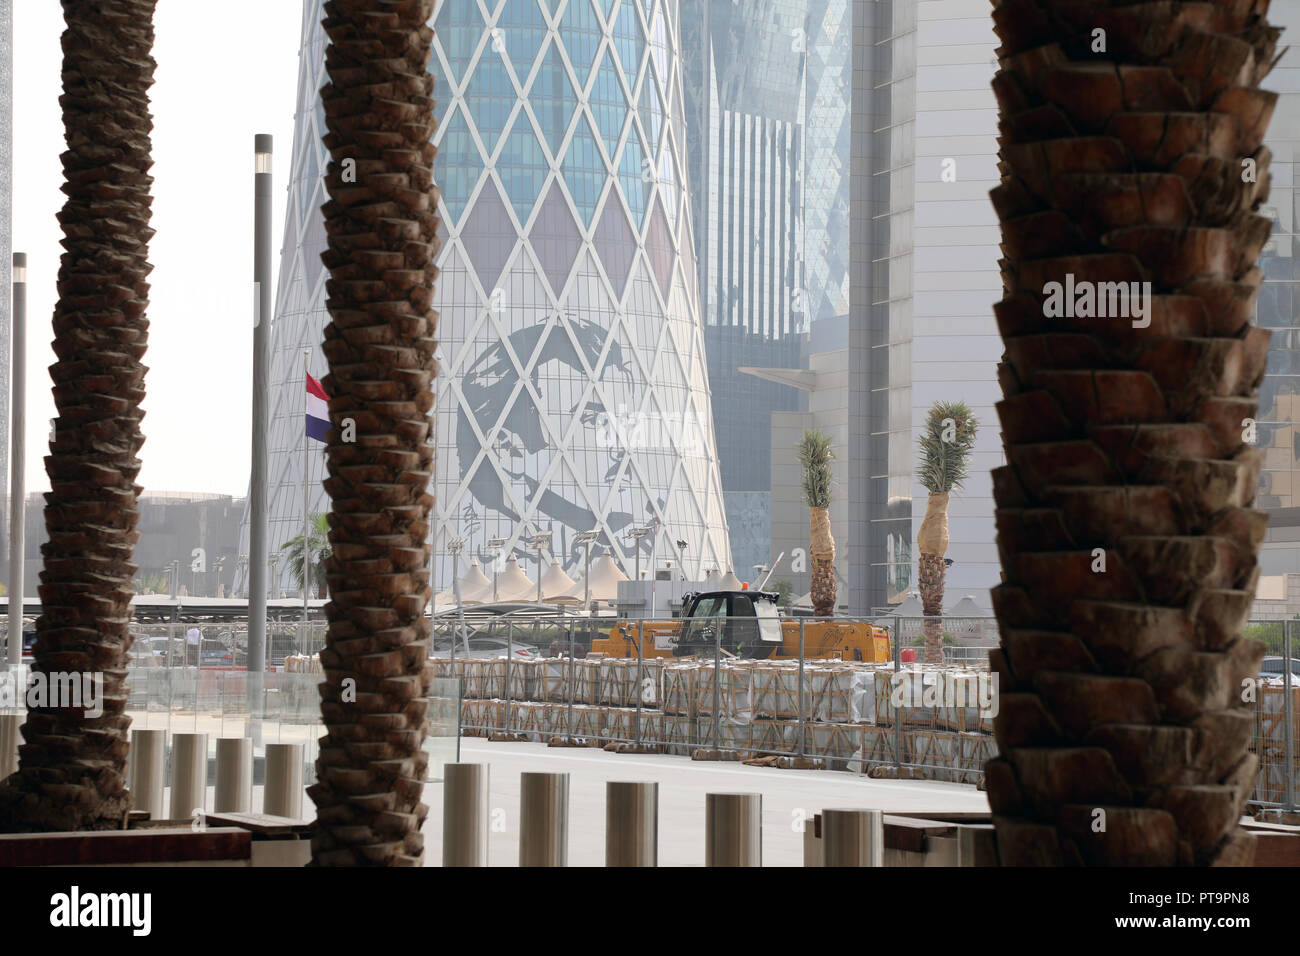 / Qatar Doha - Octobre 8, 2018 : une image styalised de Cheikh Tamim bin Hamad al Thani créé par Ahmed Almaadheed sur le côté d'un immeuble dans le centre de Doha Crédit : Dominic Dudley/Alamy Live News Banque D'Images